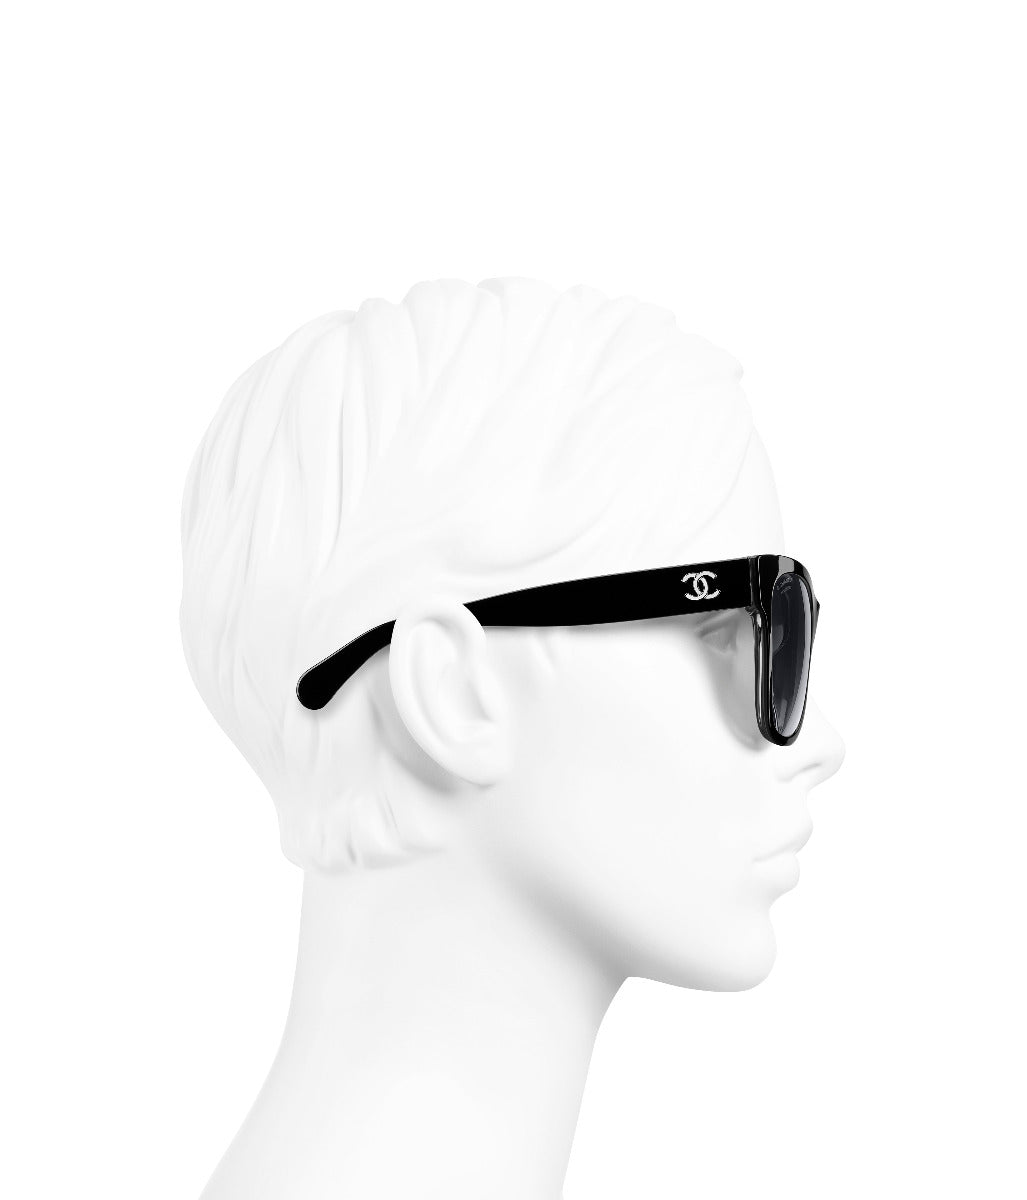 Chanel Square Sunglasses CH5380 Black